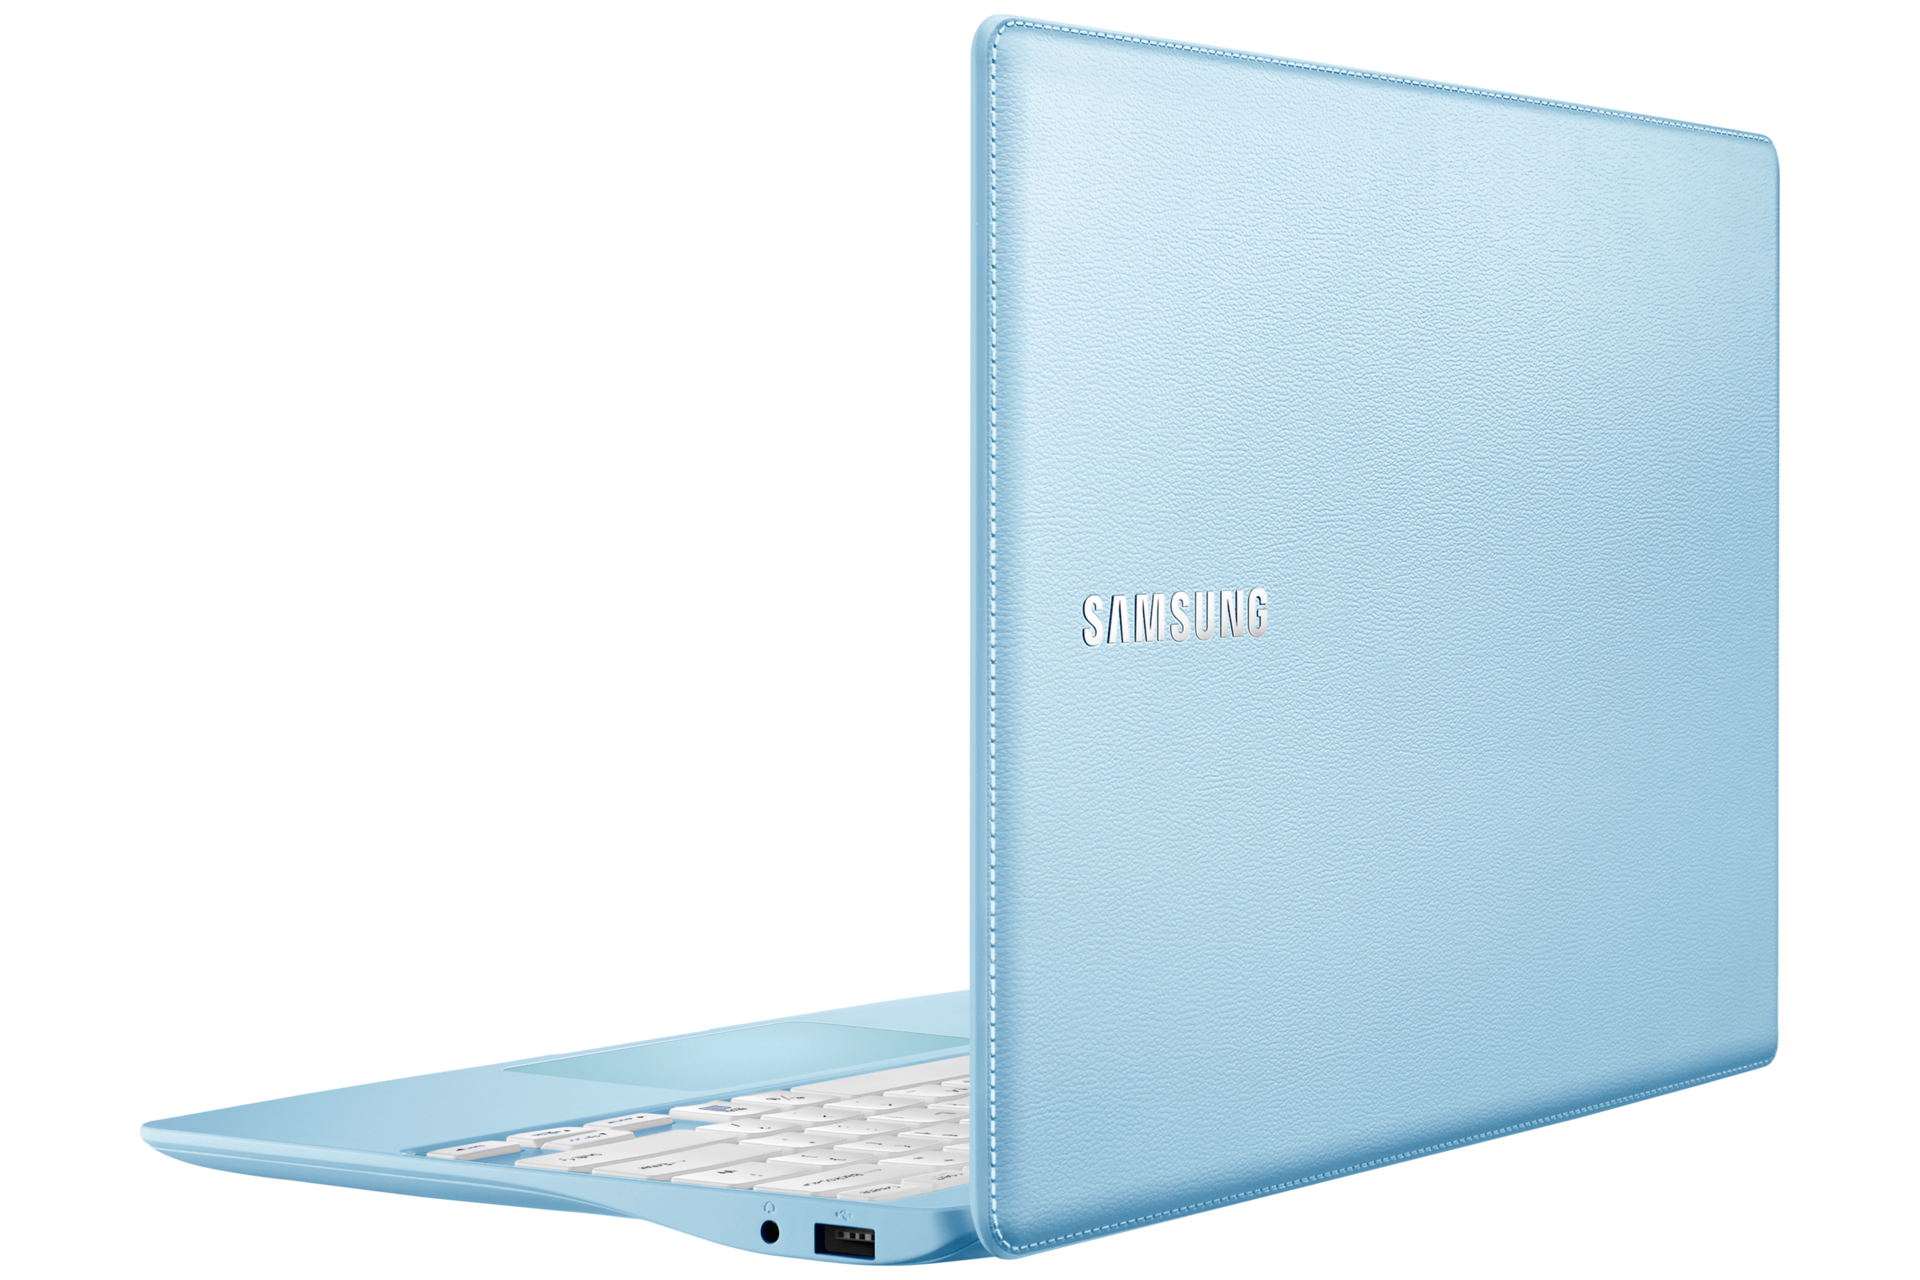 노트북 M (29.5cm)
NT110S1J-K13L
Celeron®/128GB SSD